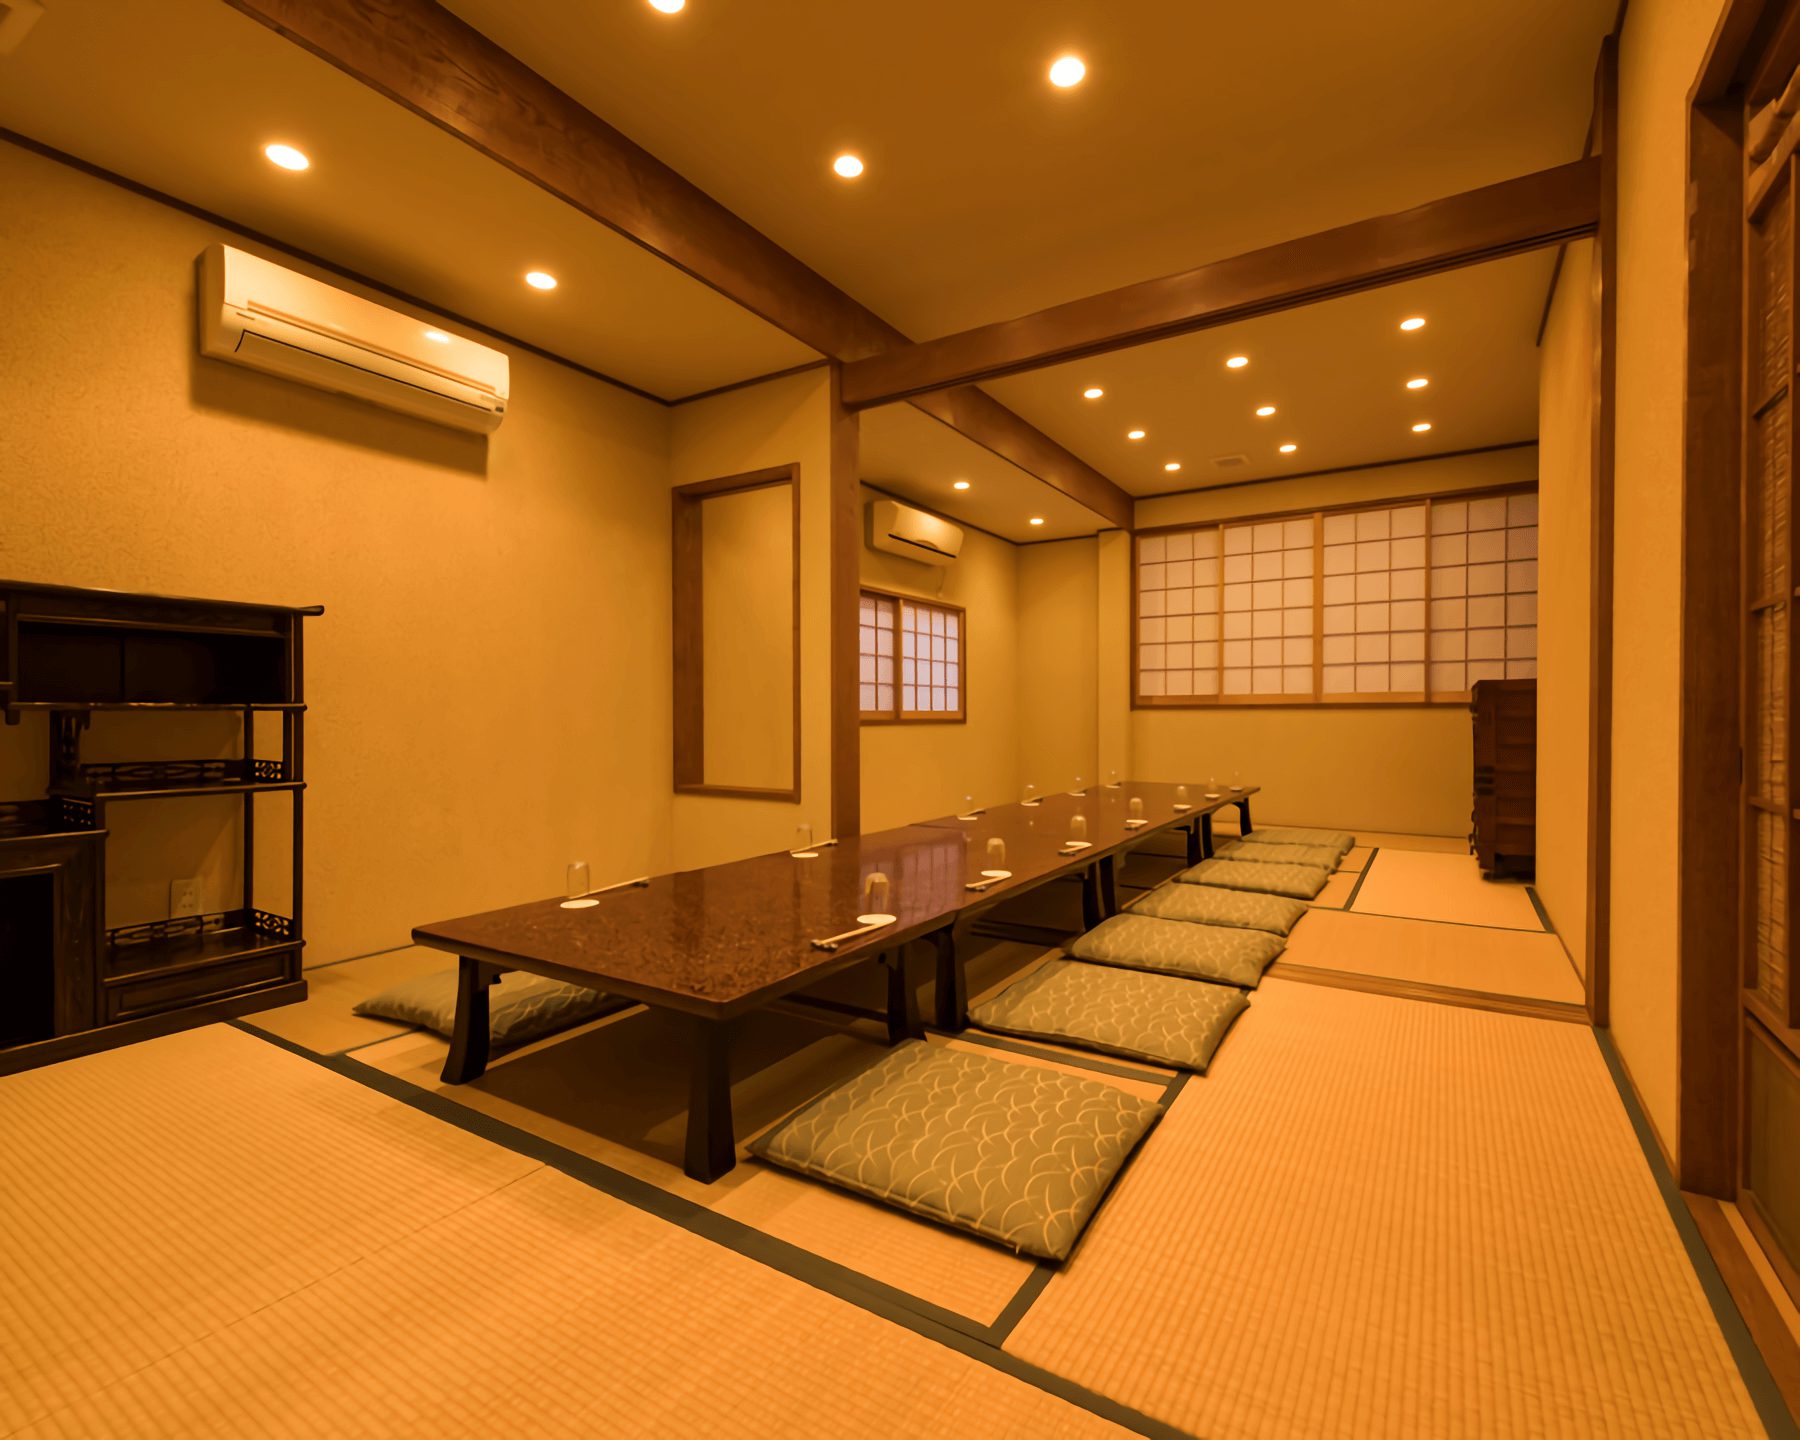 Second floor (Tatami room)